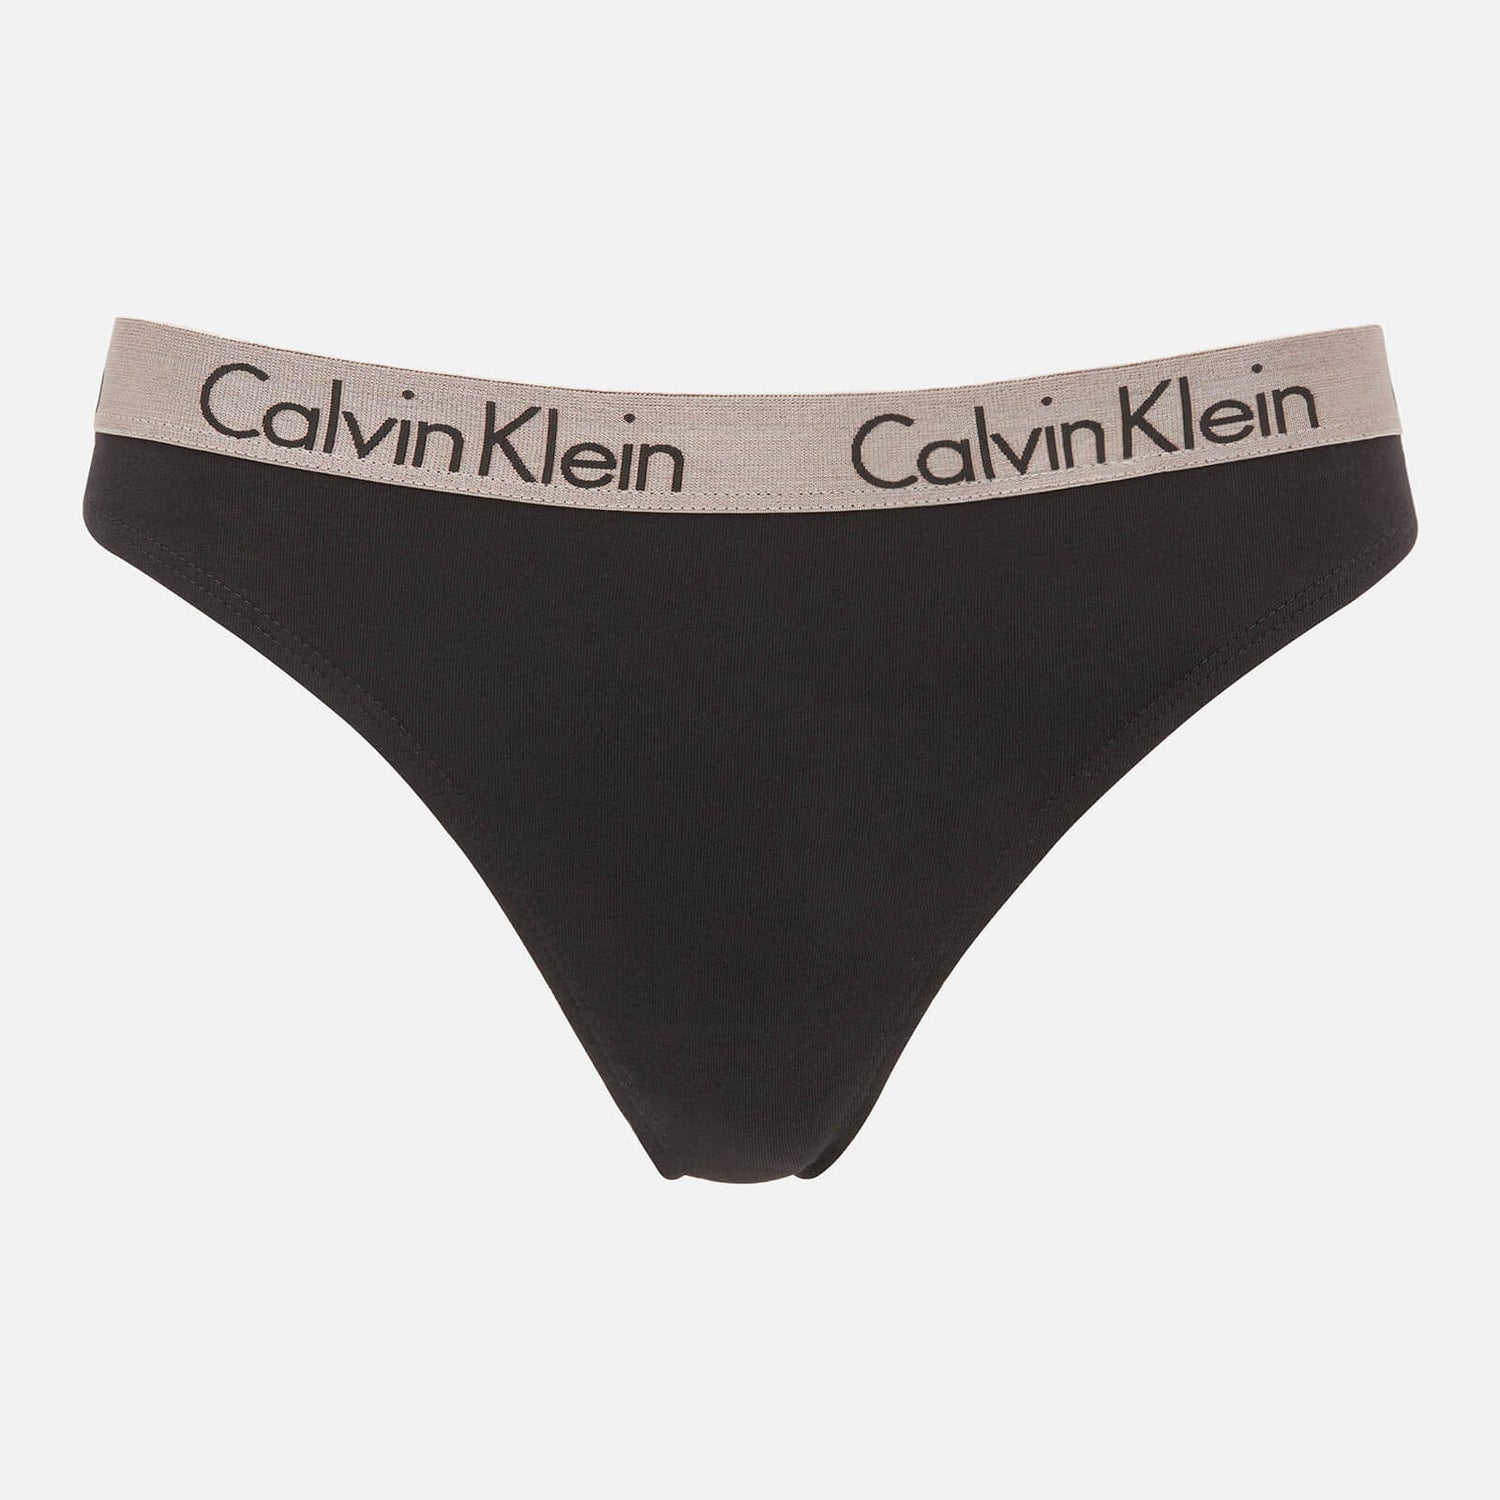 Calvin Klein Women's 3-Pk Thong - Turtle Bay/Black/Strawberry Champagne ...